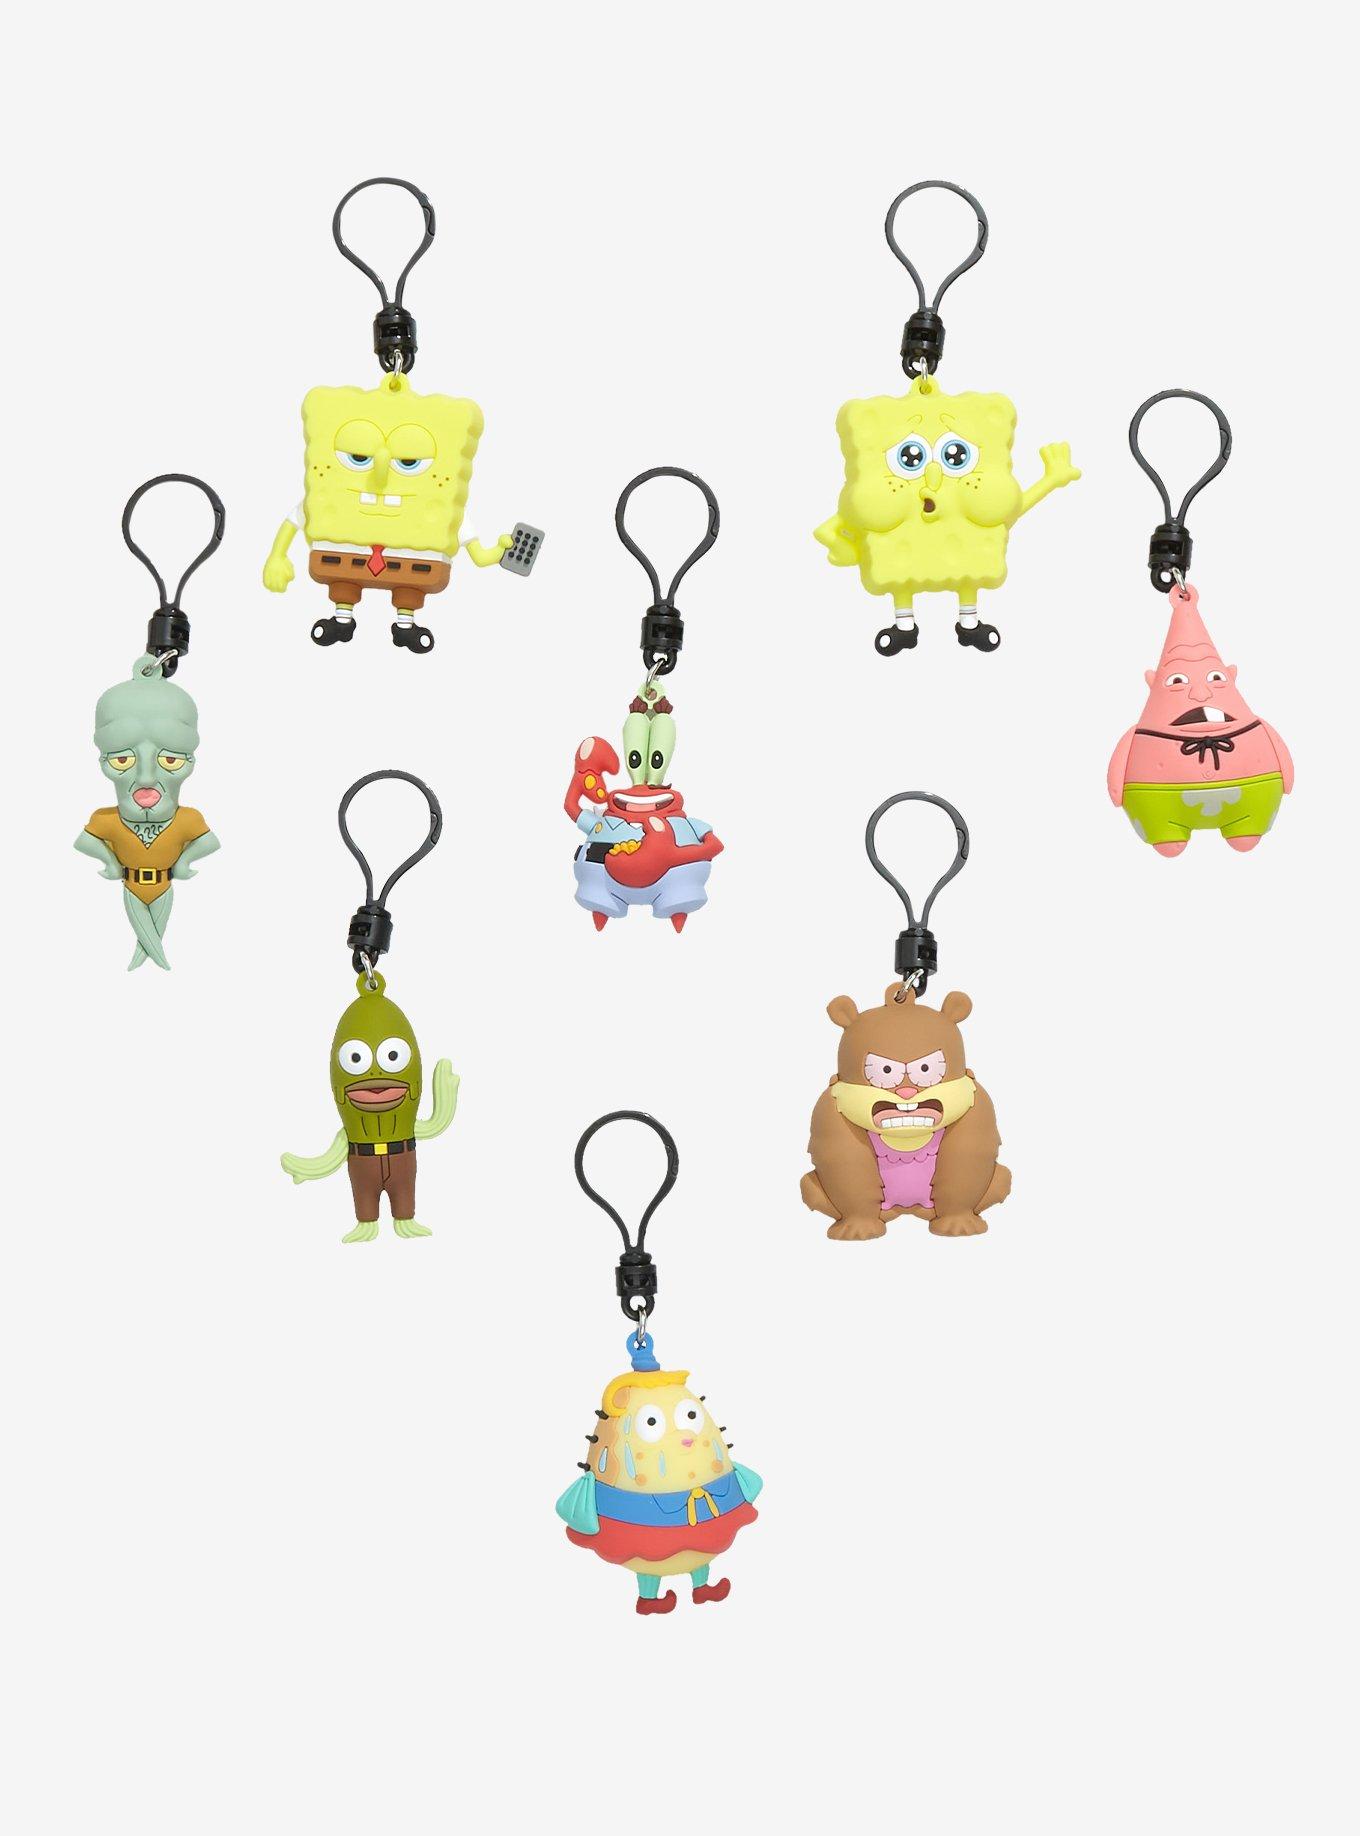 SpongeBob SquarePants Characters Series 5 Blind Bag Figural Bag